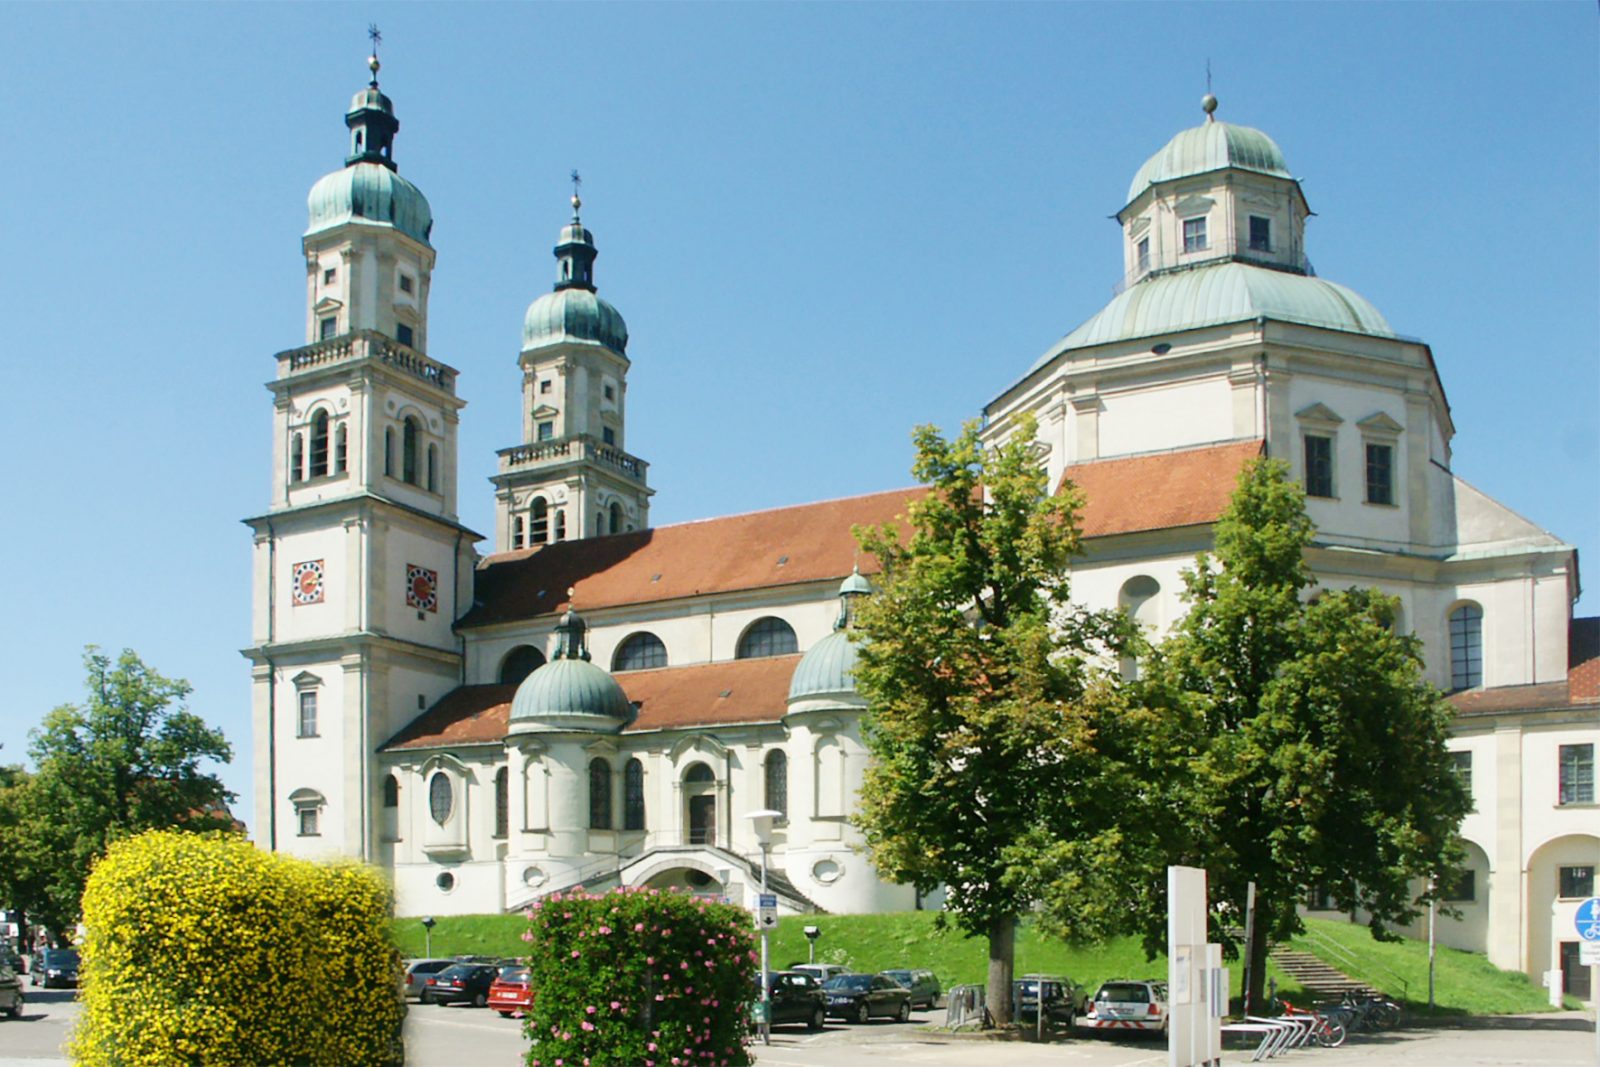 Basilika St. Lorenz in Kempten - Außenrenovierung